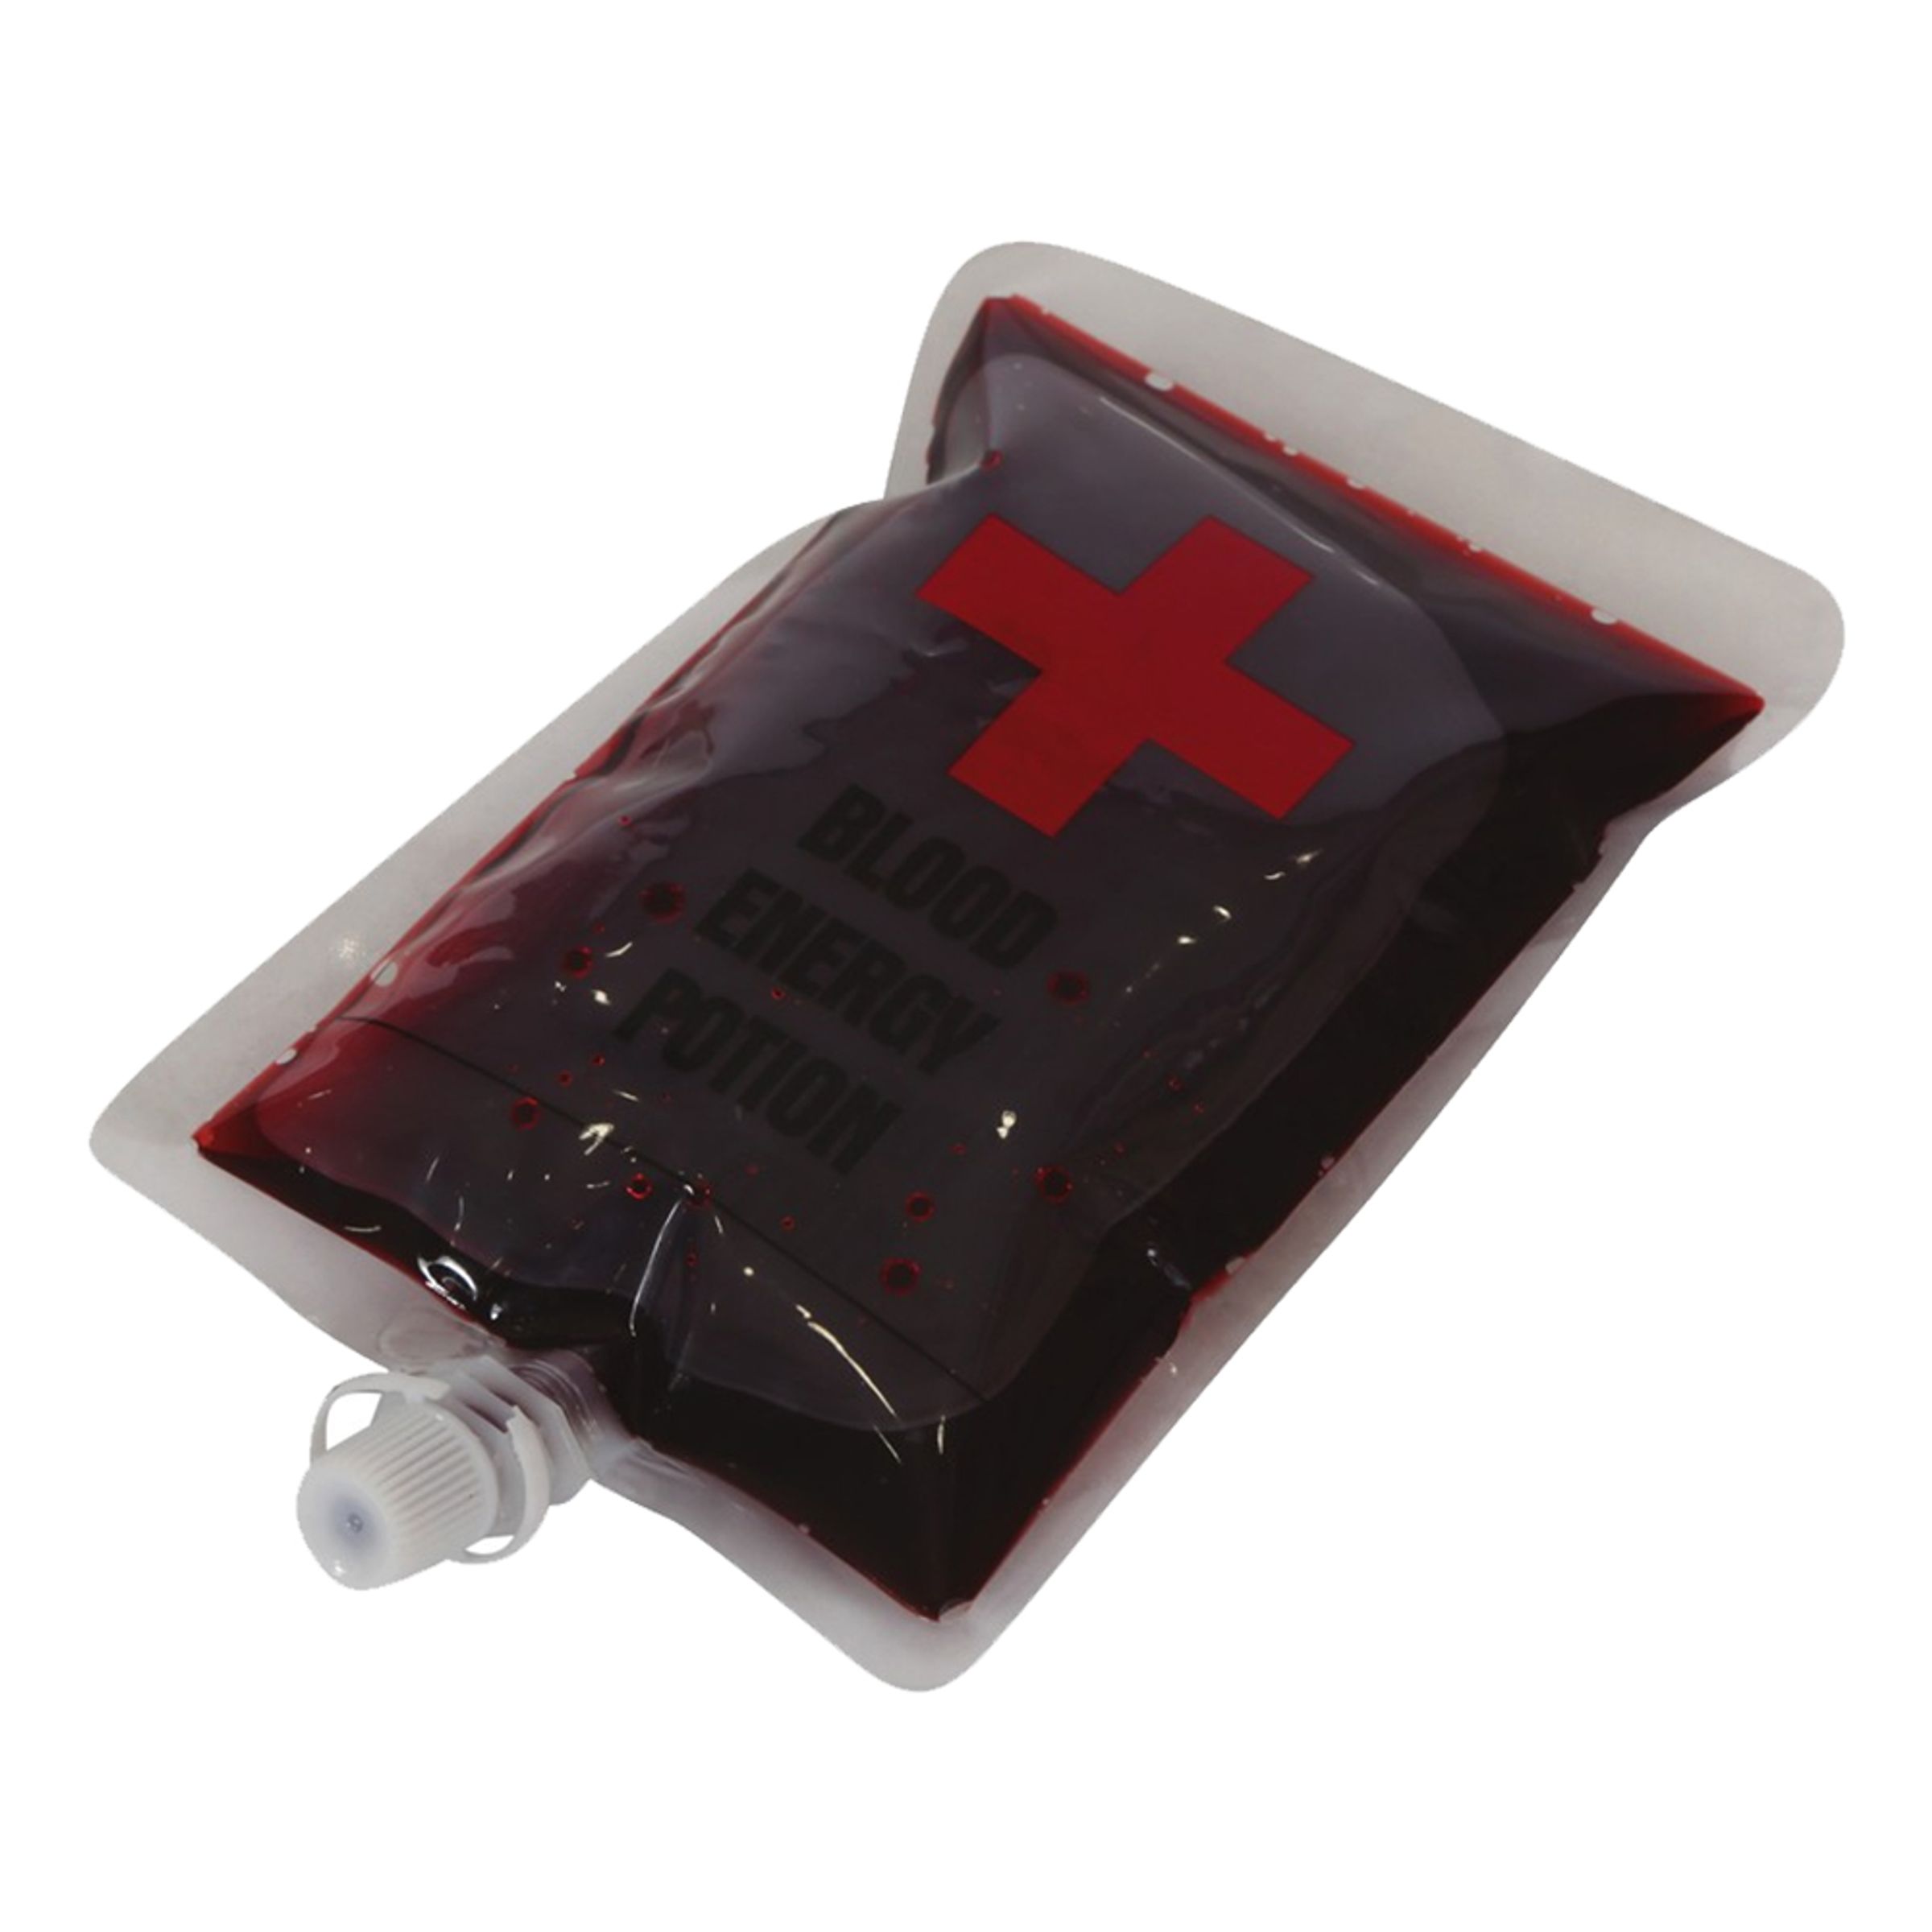 Blodpåse med Fejkblod - 200 ml